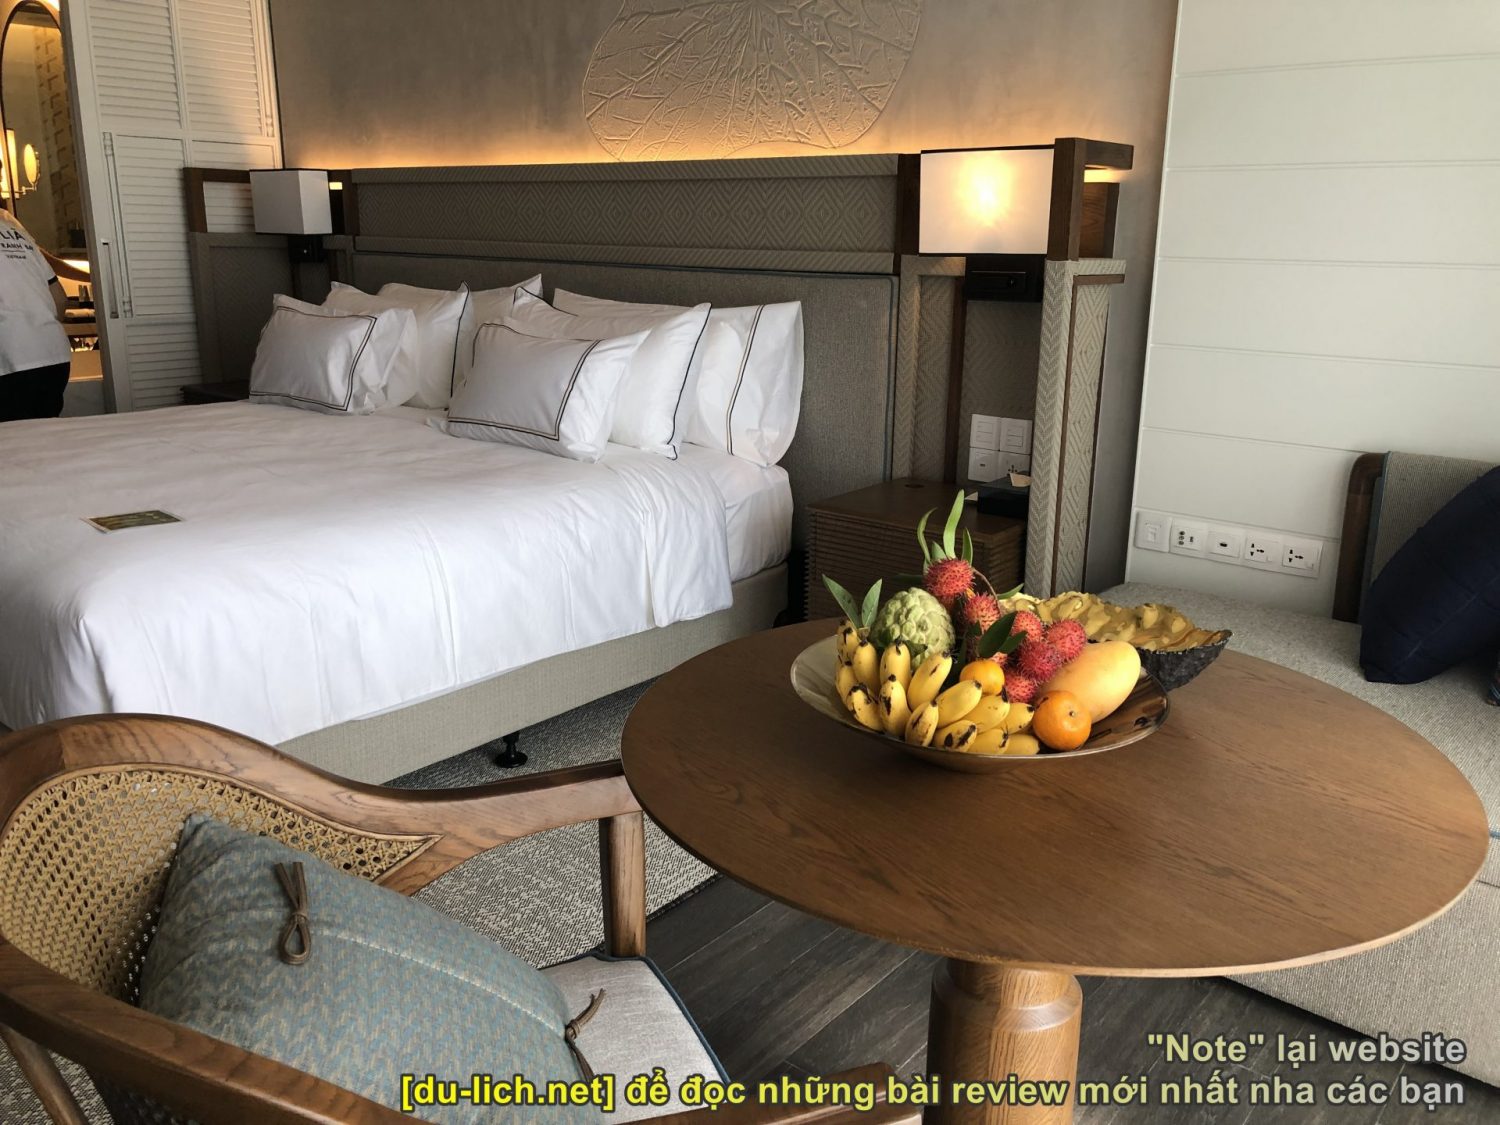 Nhiều khách sạn sắp sẵn trái cây dành tặng khách nên nếu không ăn, anh em có thể lấy của khách sạn để đem đi